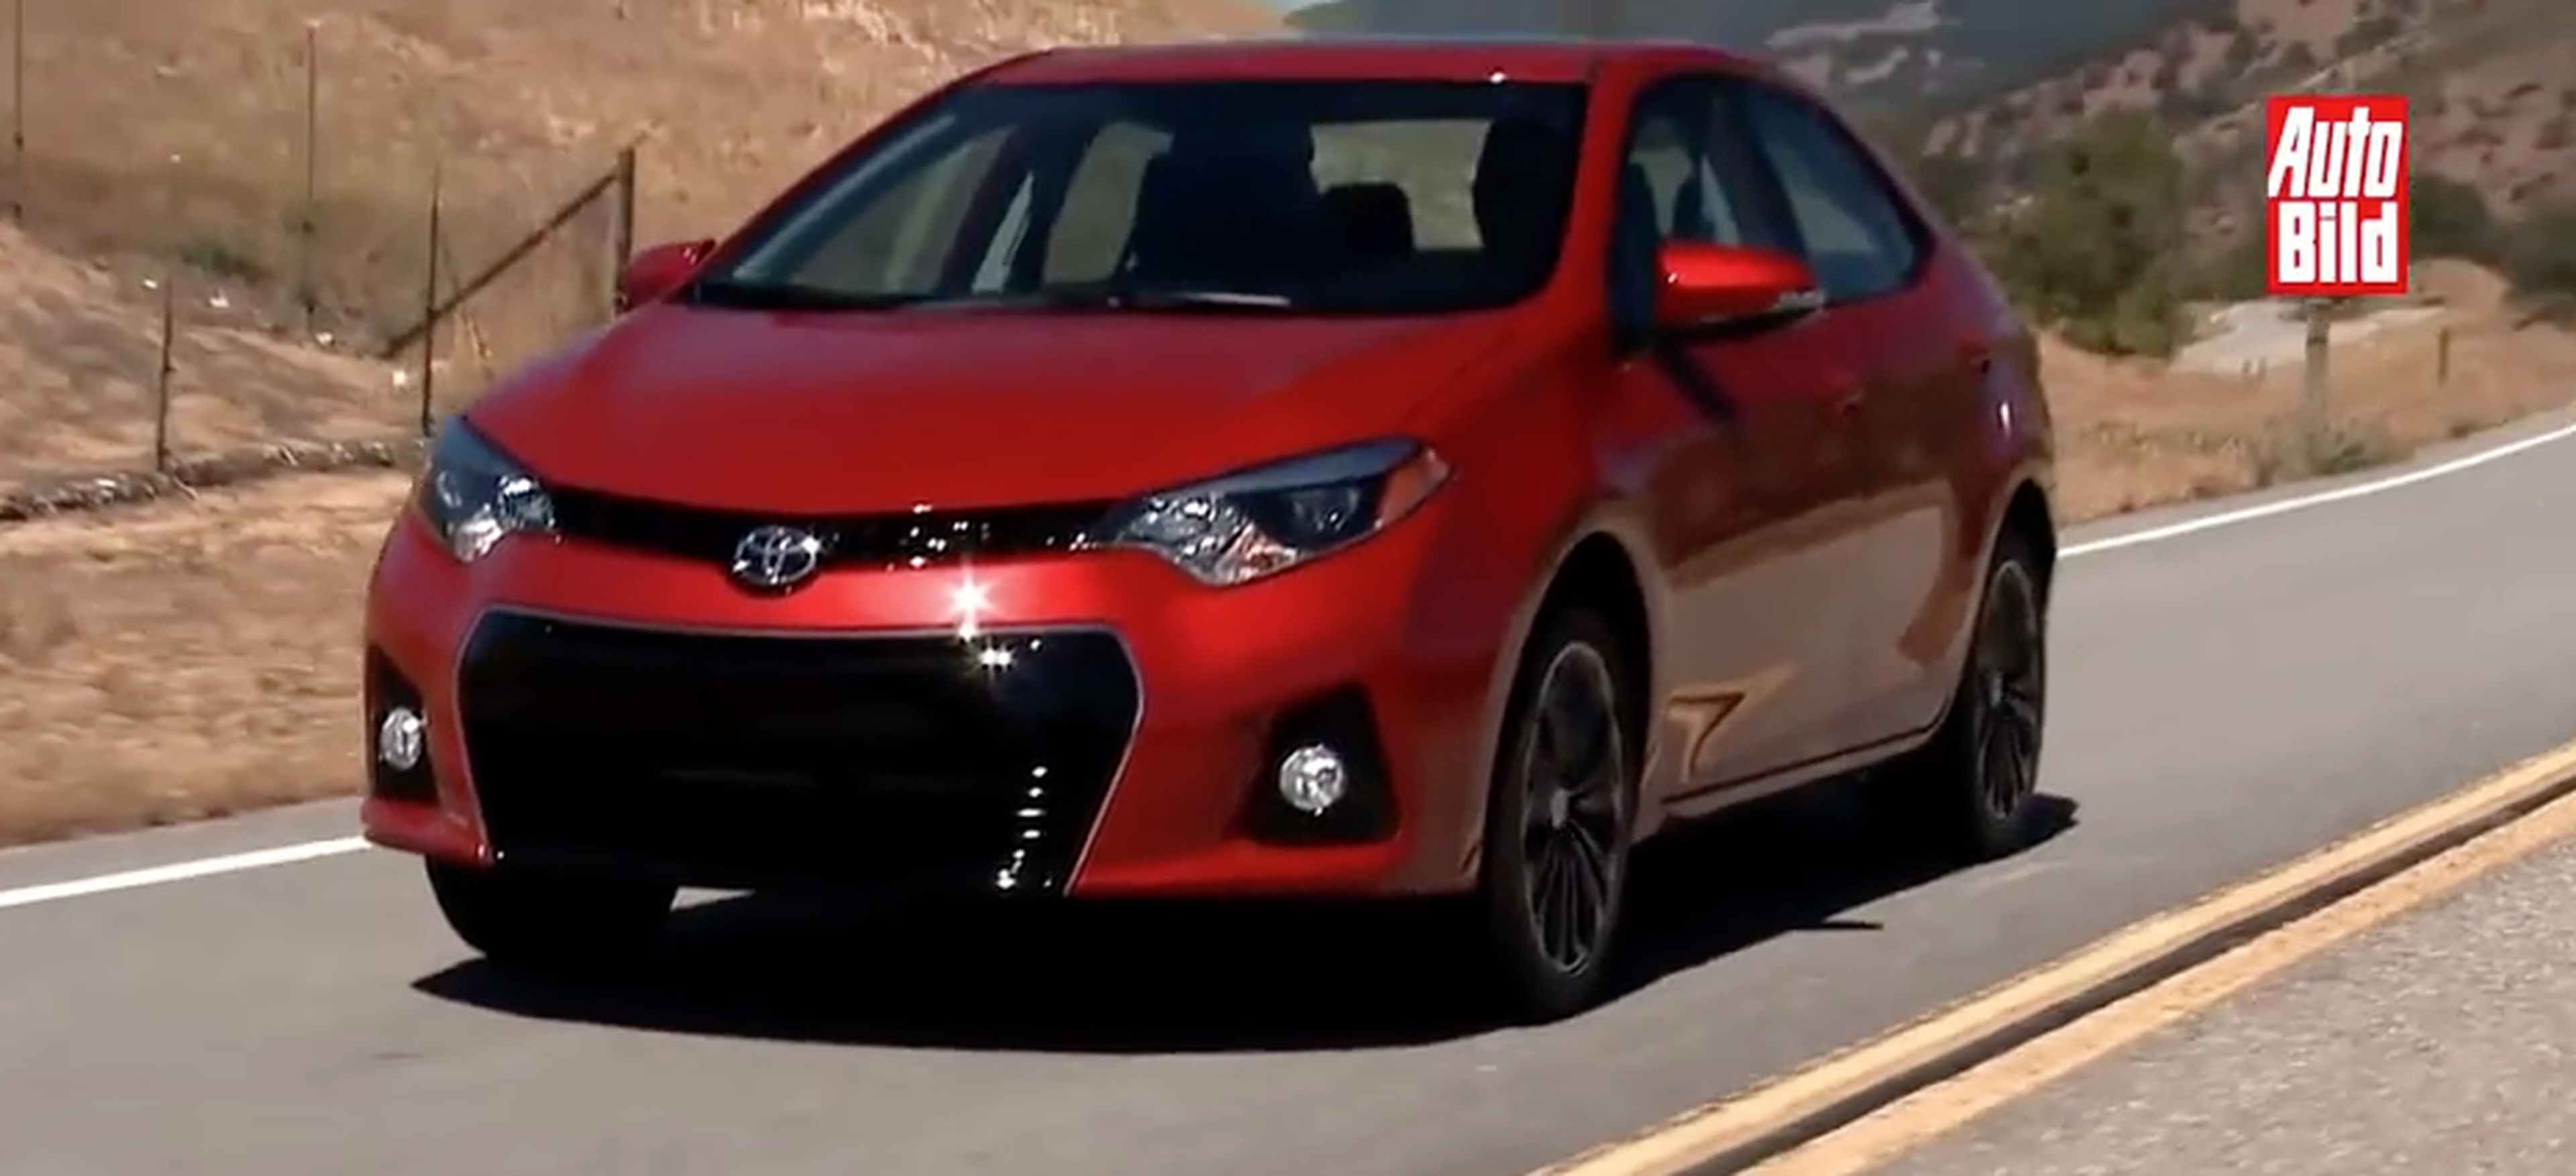 VÍDEO: 50 años del Toyota Corolla, ¡imposible olvidarse!